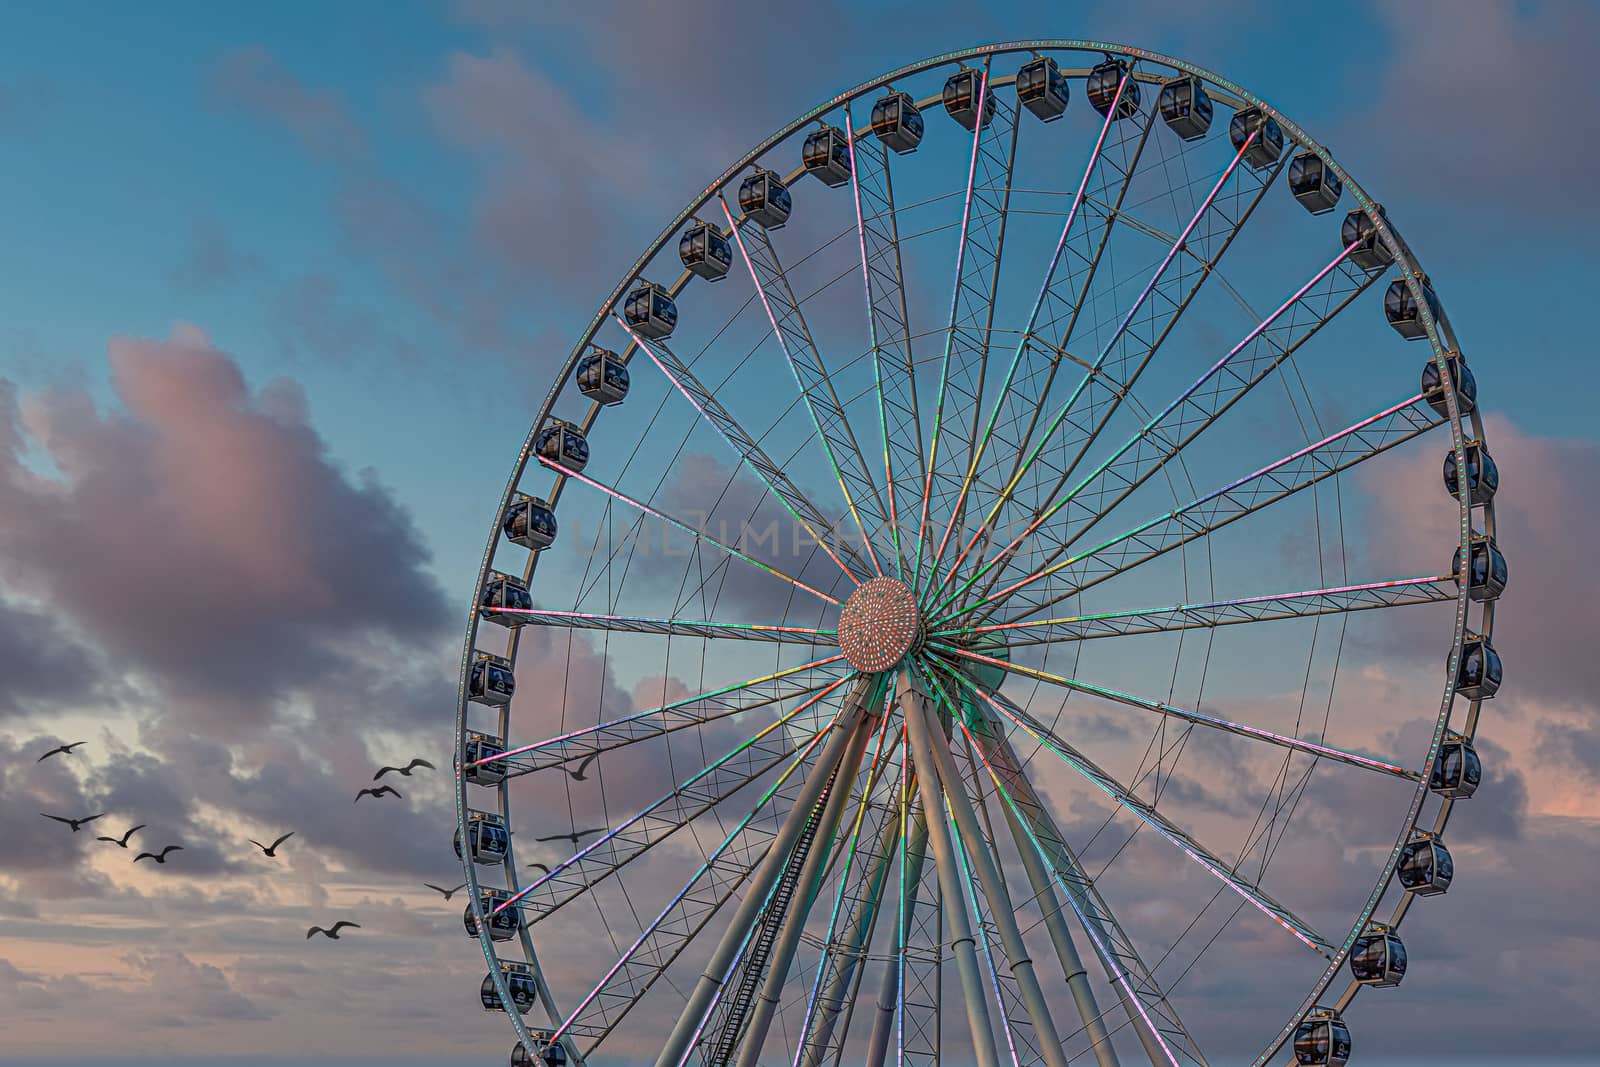 The Seattle Great Wheel is a Ferris wheel at Pier 57 in Seattle, Washington. It was the tallest Ferris wheel on the west coast when it opened on June 29, 2012.